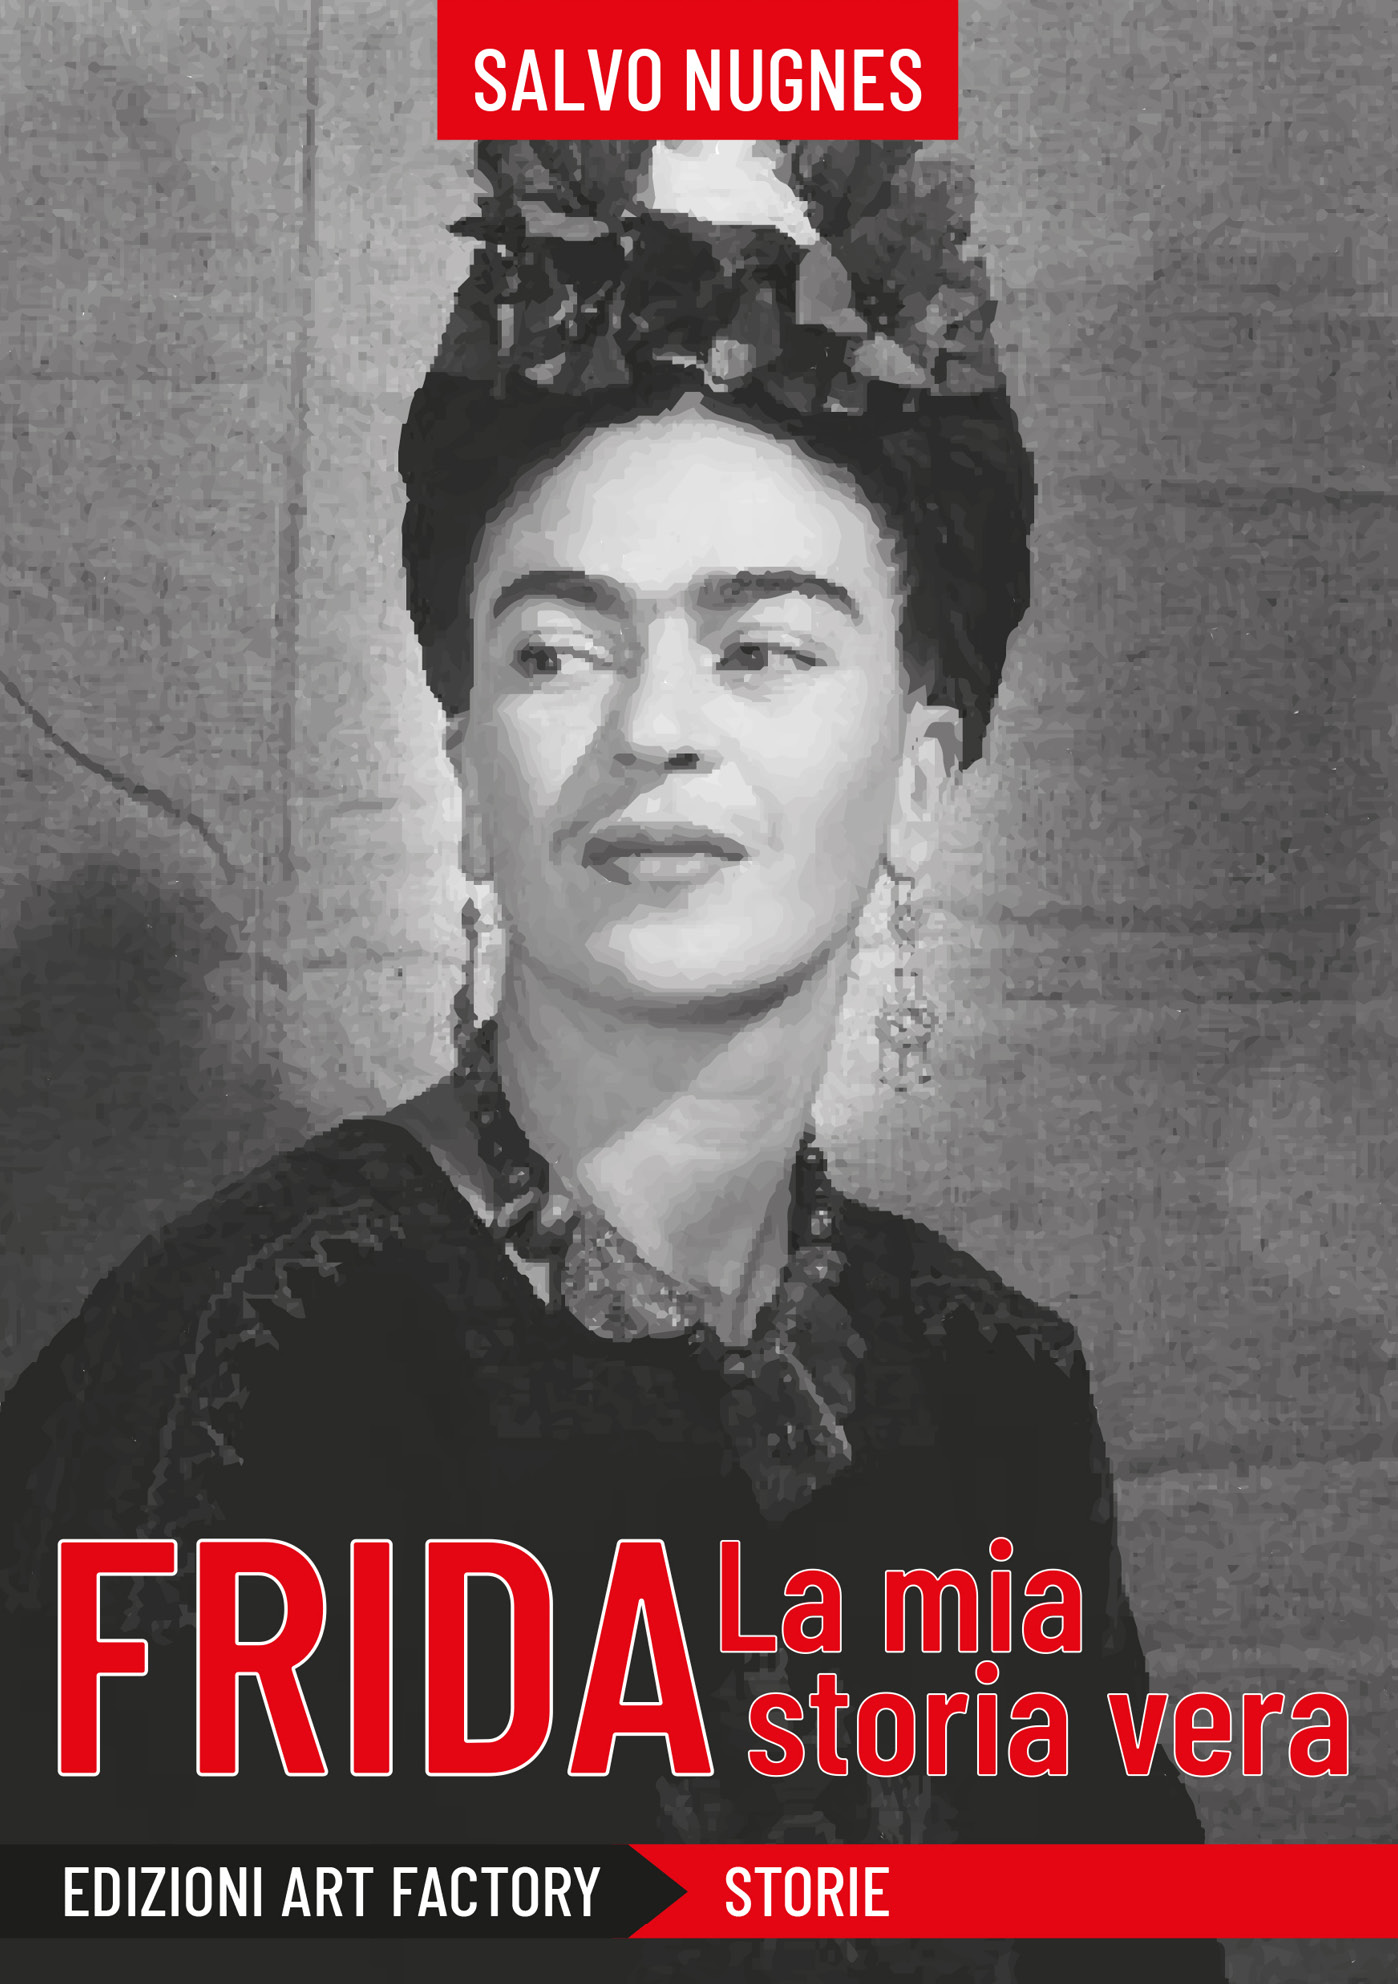 “Frida, la mia storia vera” il nuovo libro a cura di Salvo Nugnes